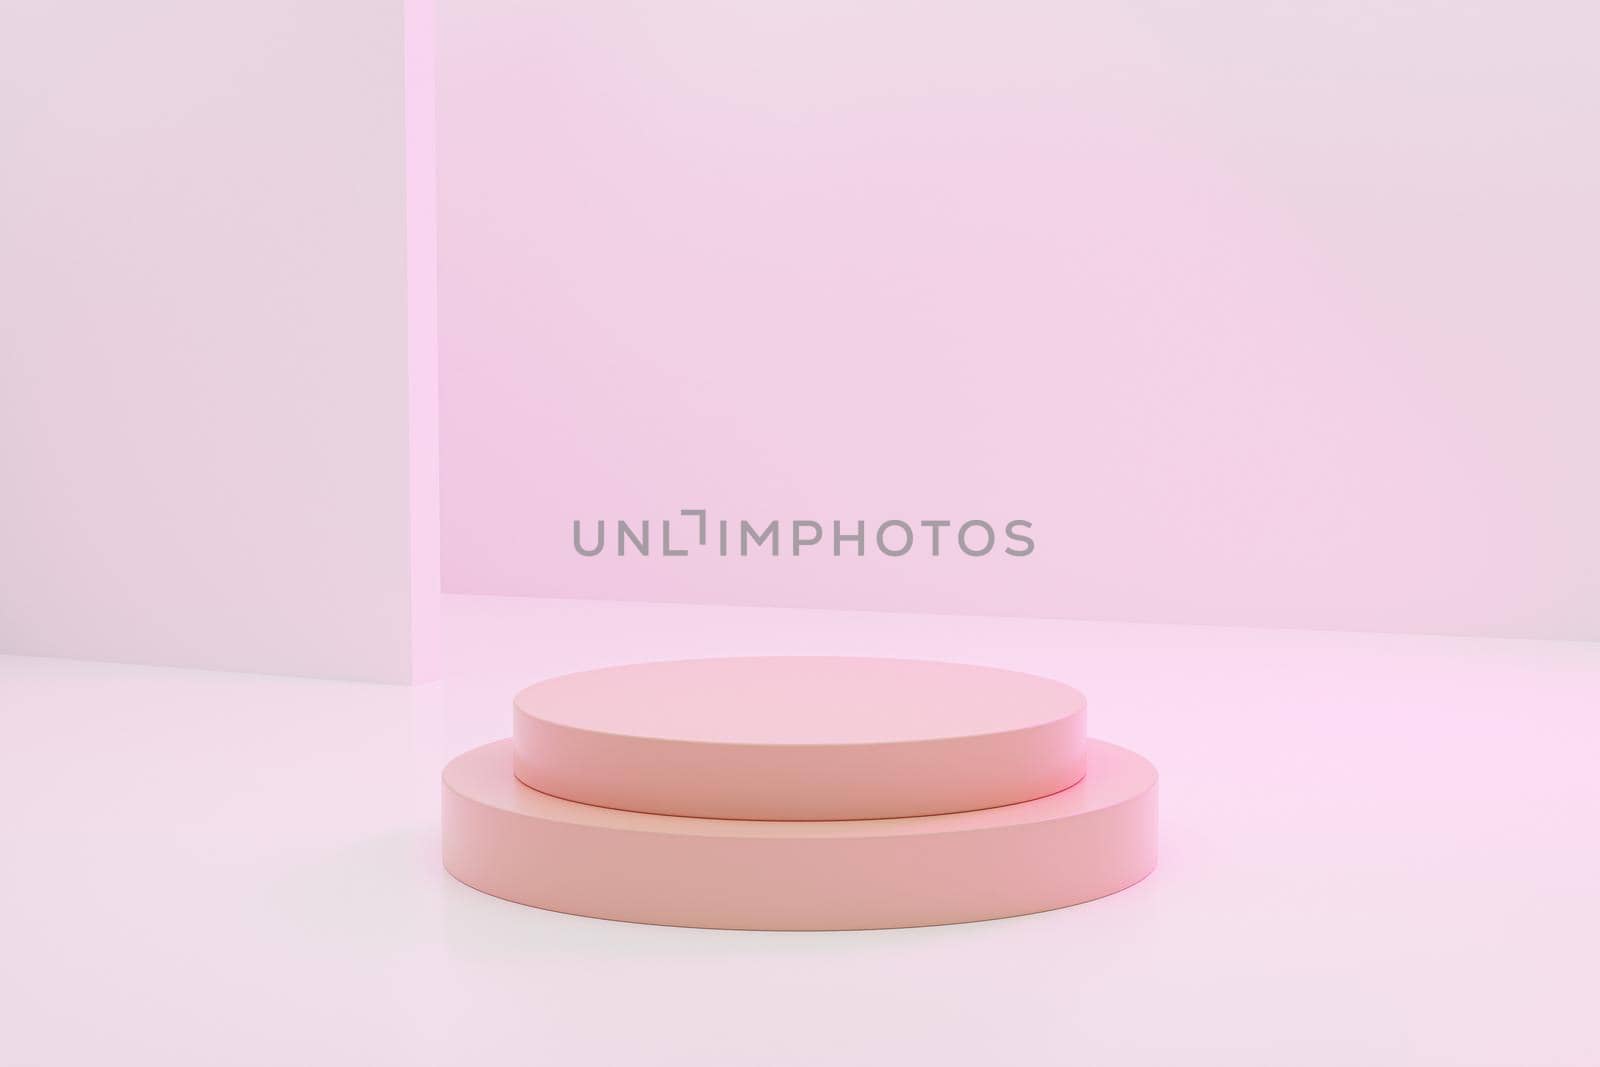 Beige cylinder shaped podium or pedestal for products or advertising on pastel pink background, minimal 3d illustration render